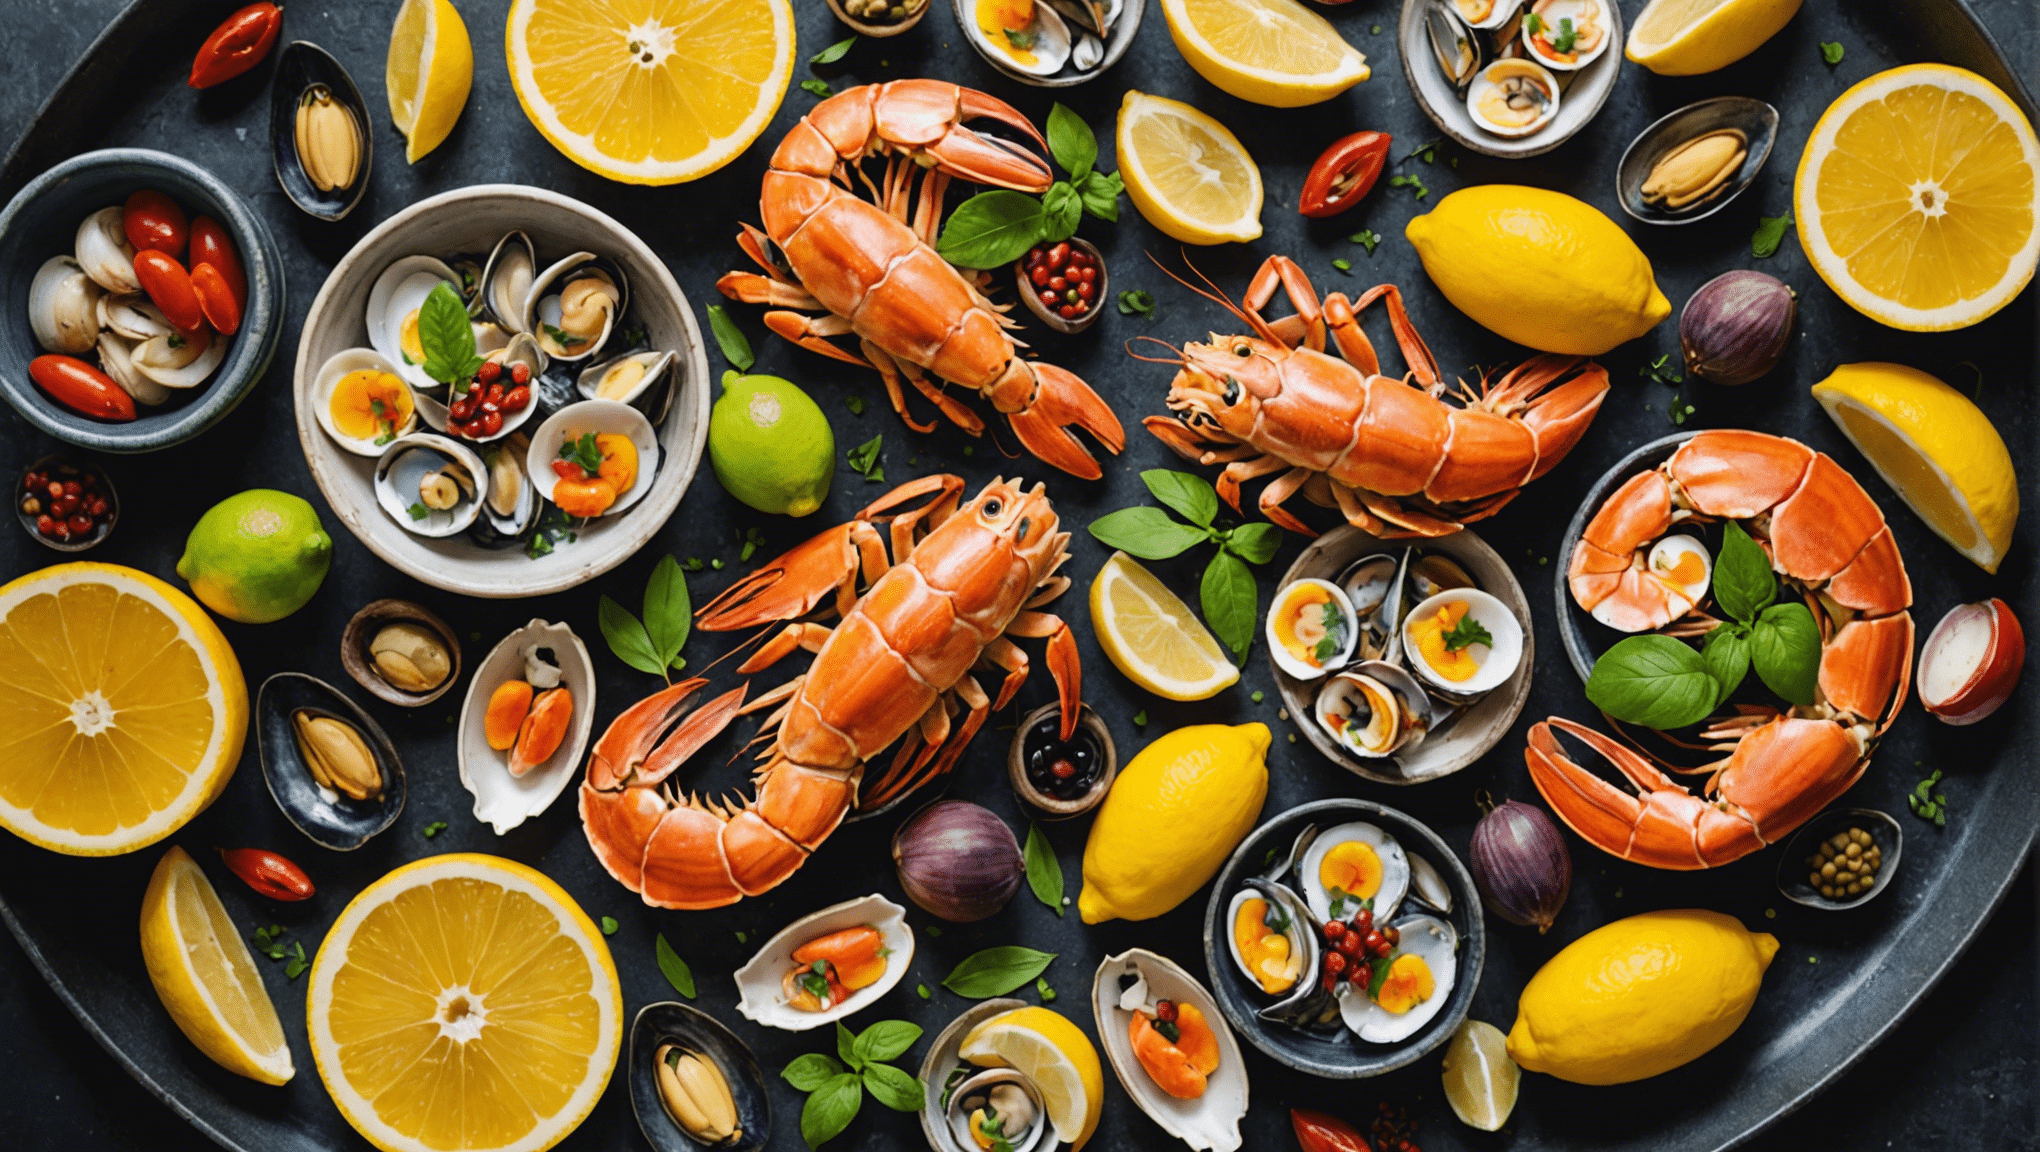 découvrez des recettes savoureuses pour combler les amateurs de fruits de mer grâce à notre sélection alléchante et variée.